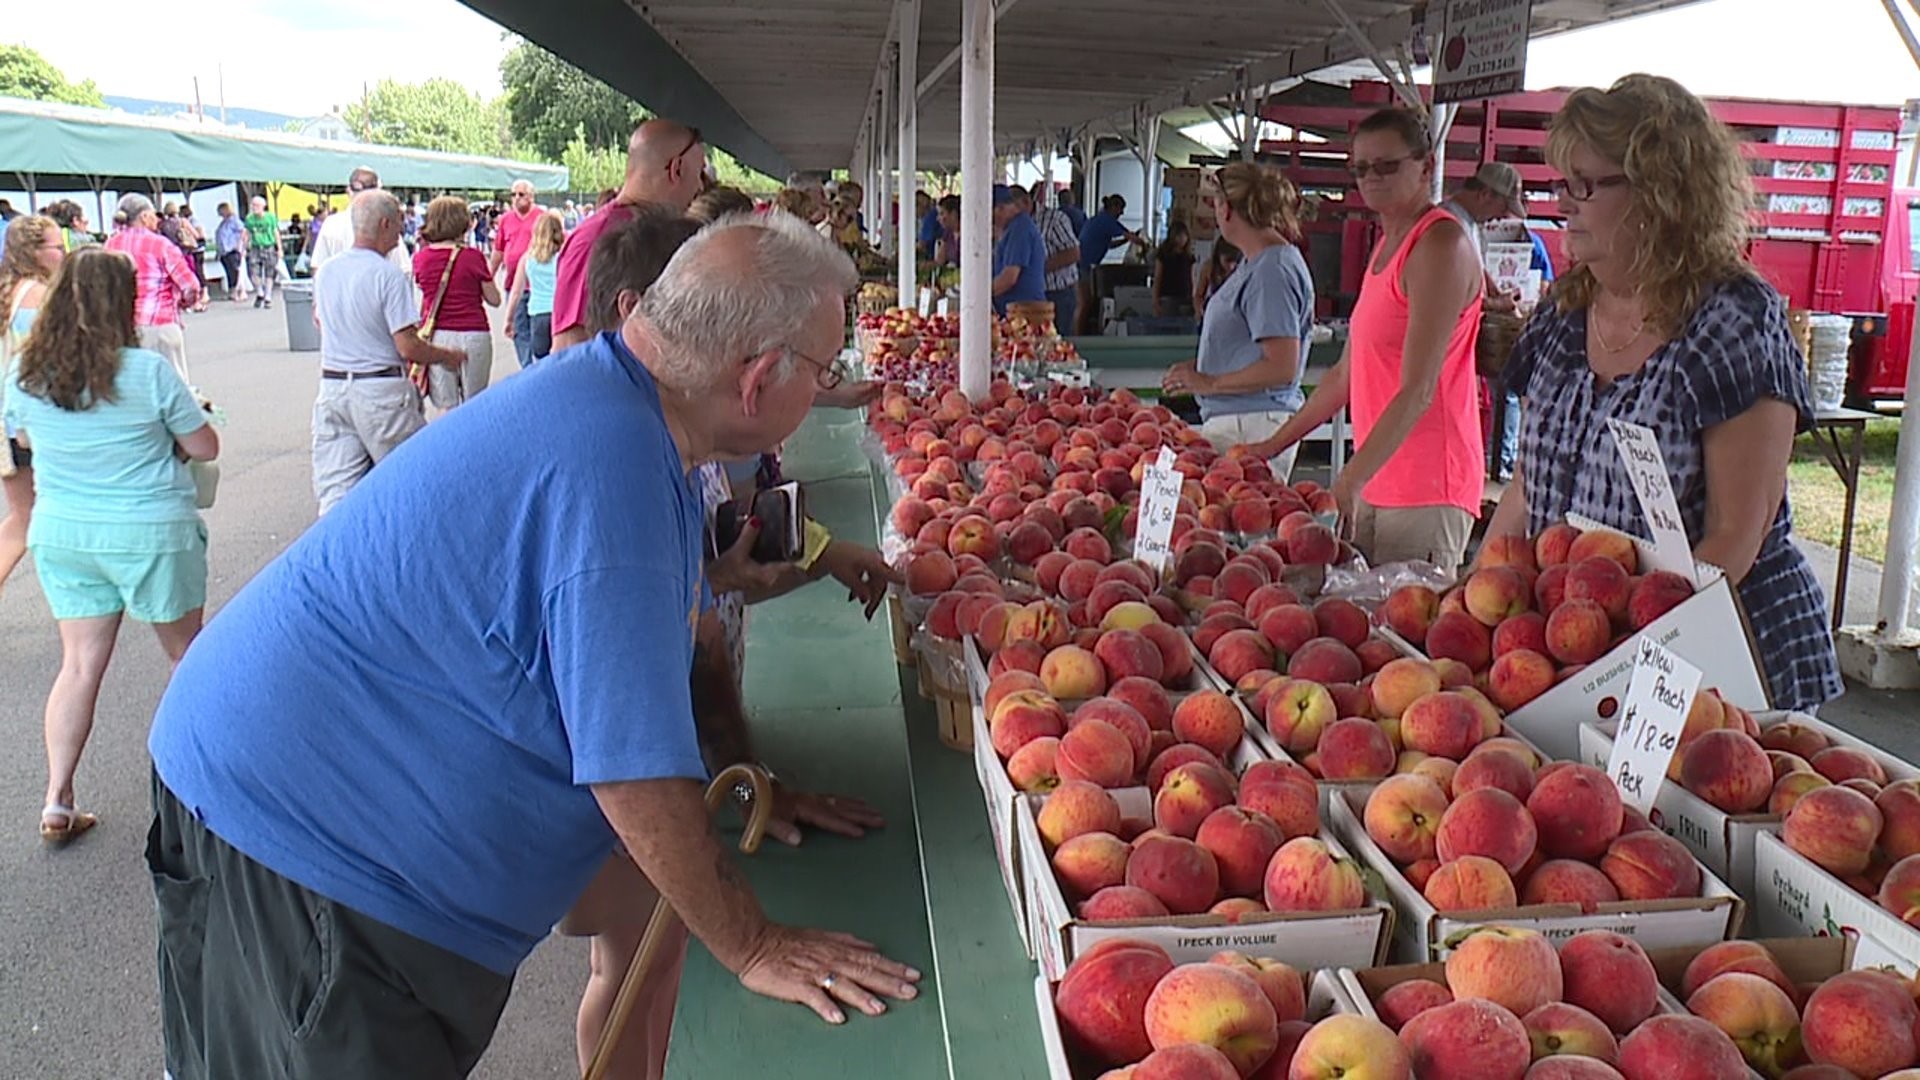 Farmers Market in Scranton Kicks Off